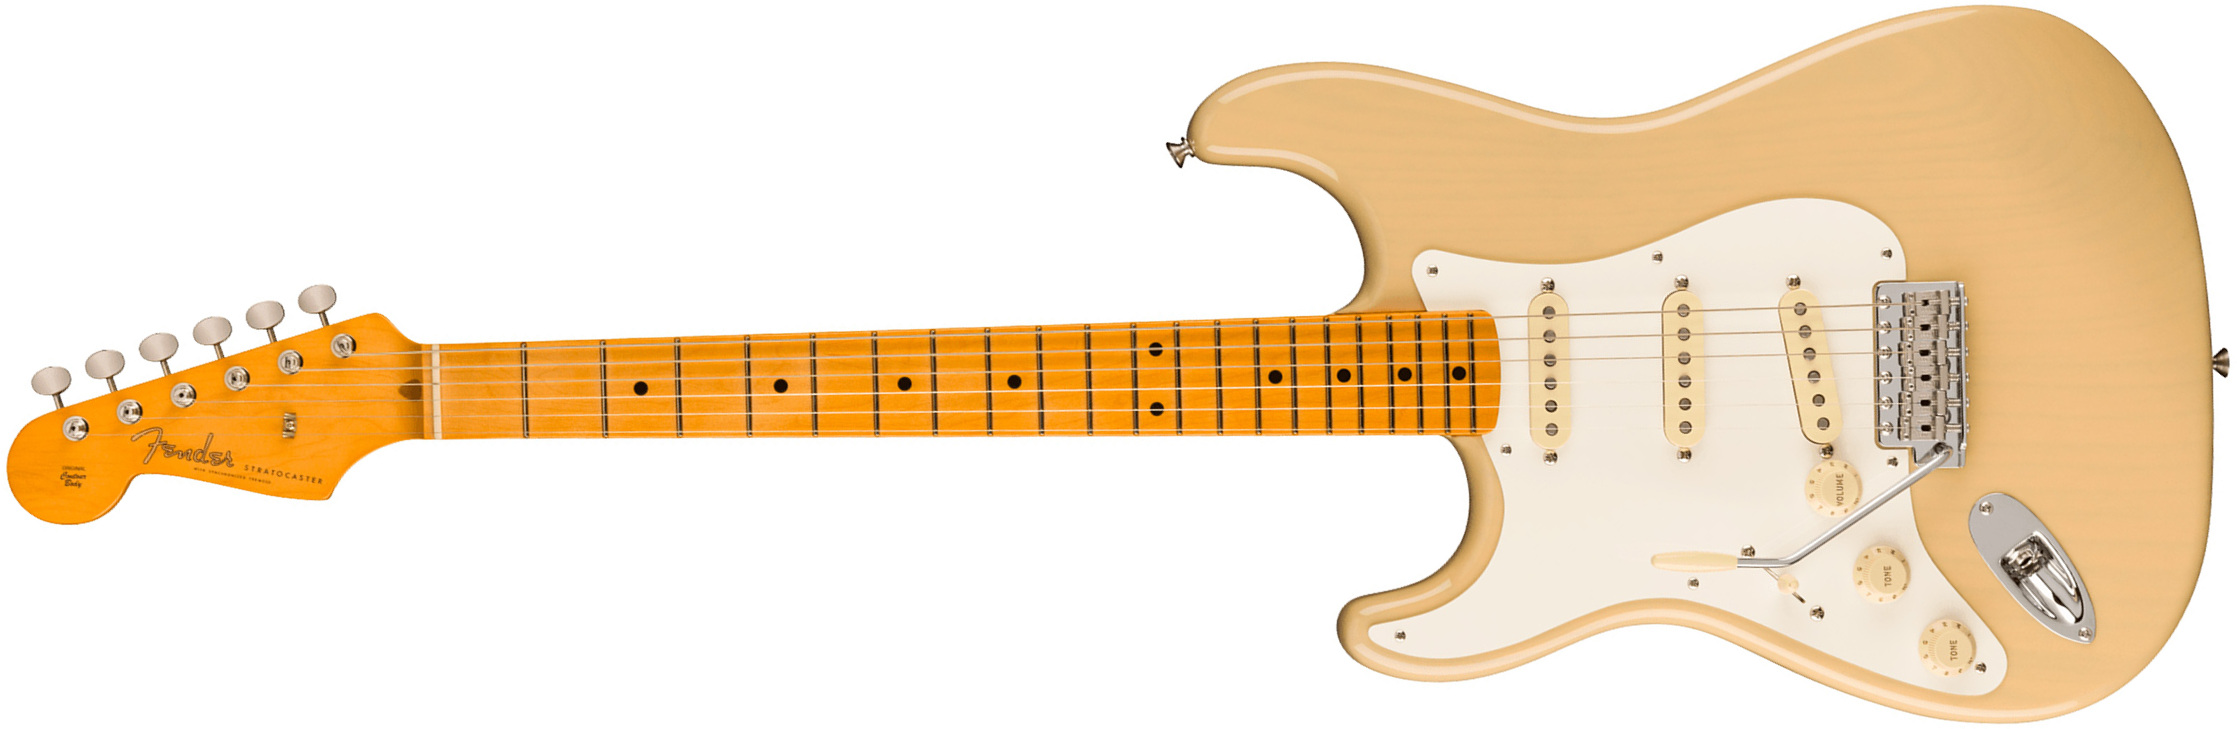 Fender Strat 1957 American Vintage Ii Lh Gaucher Usa 3s Trem Mn - Vintage Blonde - Linkshandige elektrische gitaar - Main picture